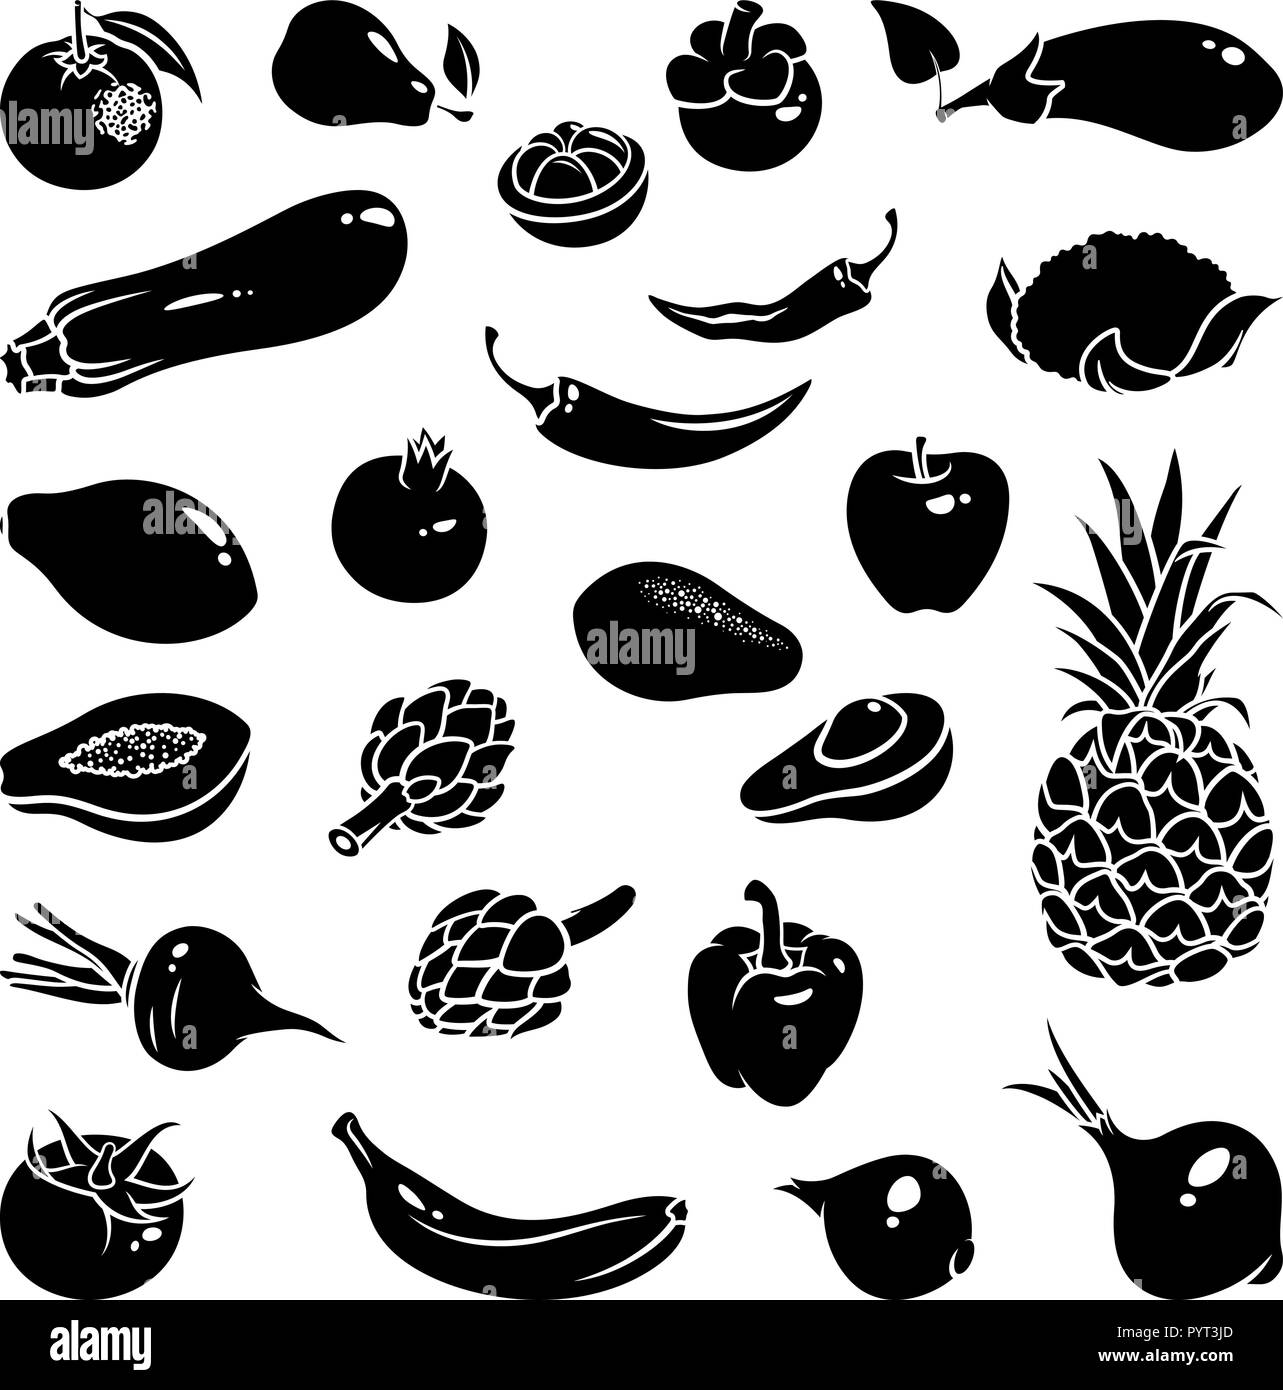 Icone di frutta e verdura: mangosteen, pepe, peperoncino, pera, banana, avocado, arancio, melograno, zucchine, papaia, Carciofo, mela, ananas, Illustrazione Vettoriale